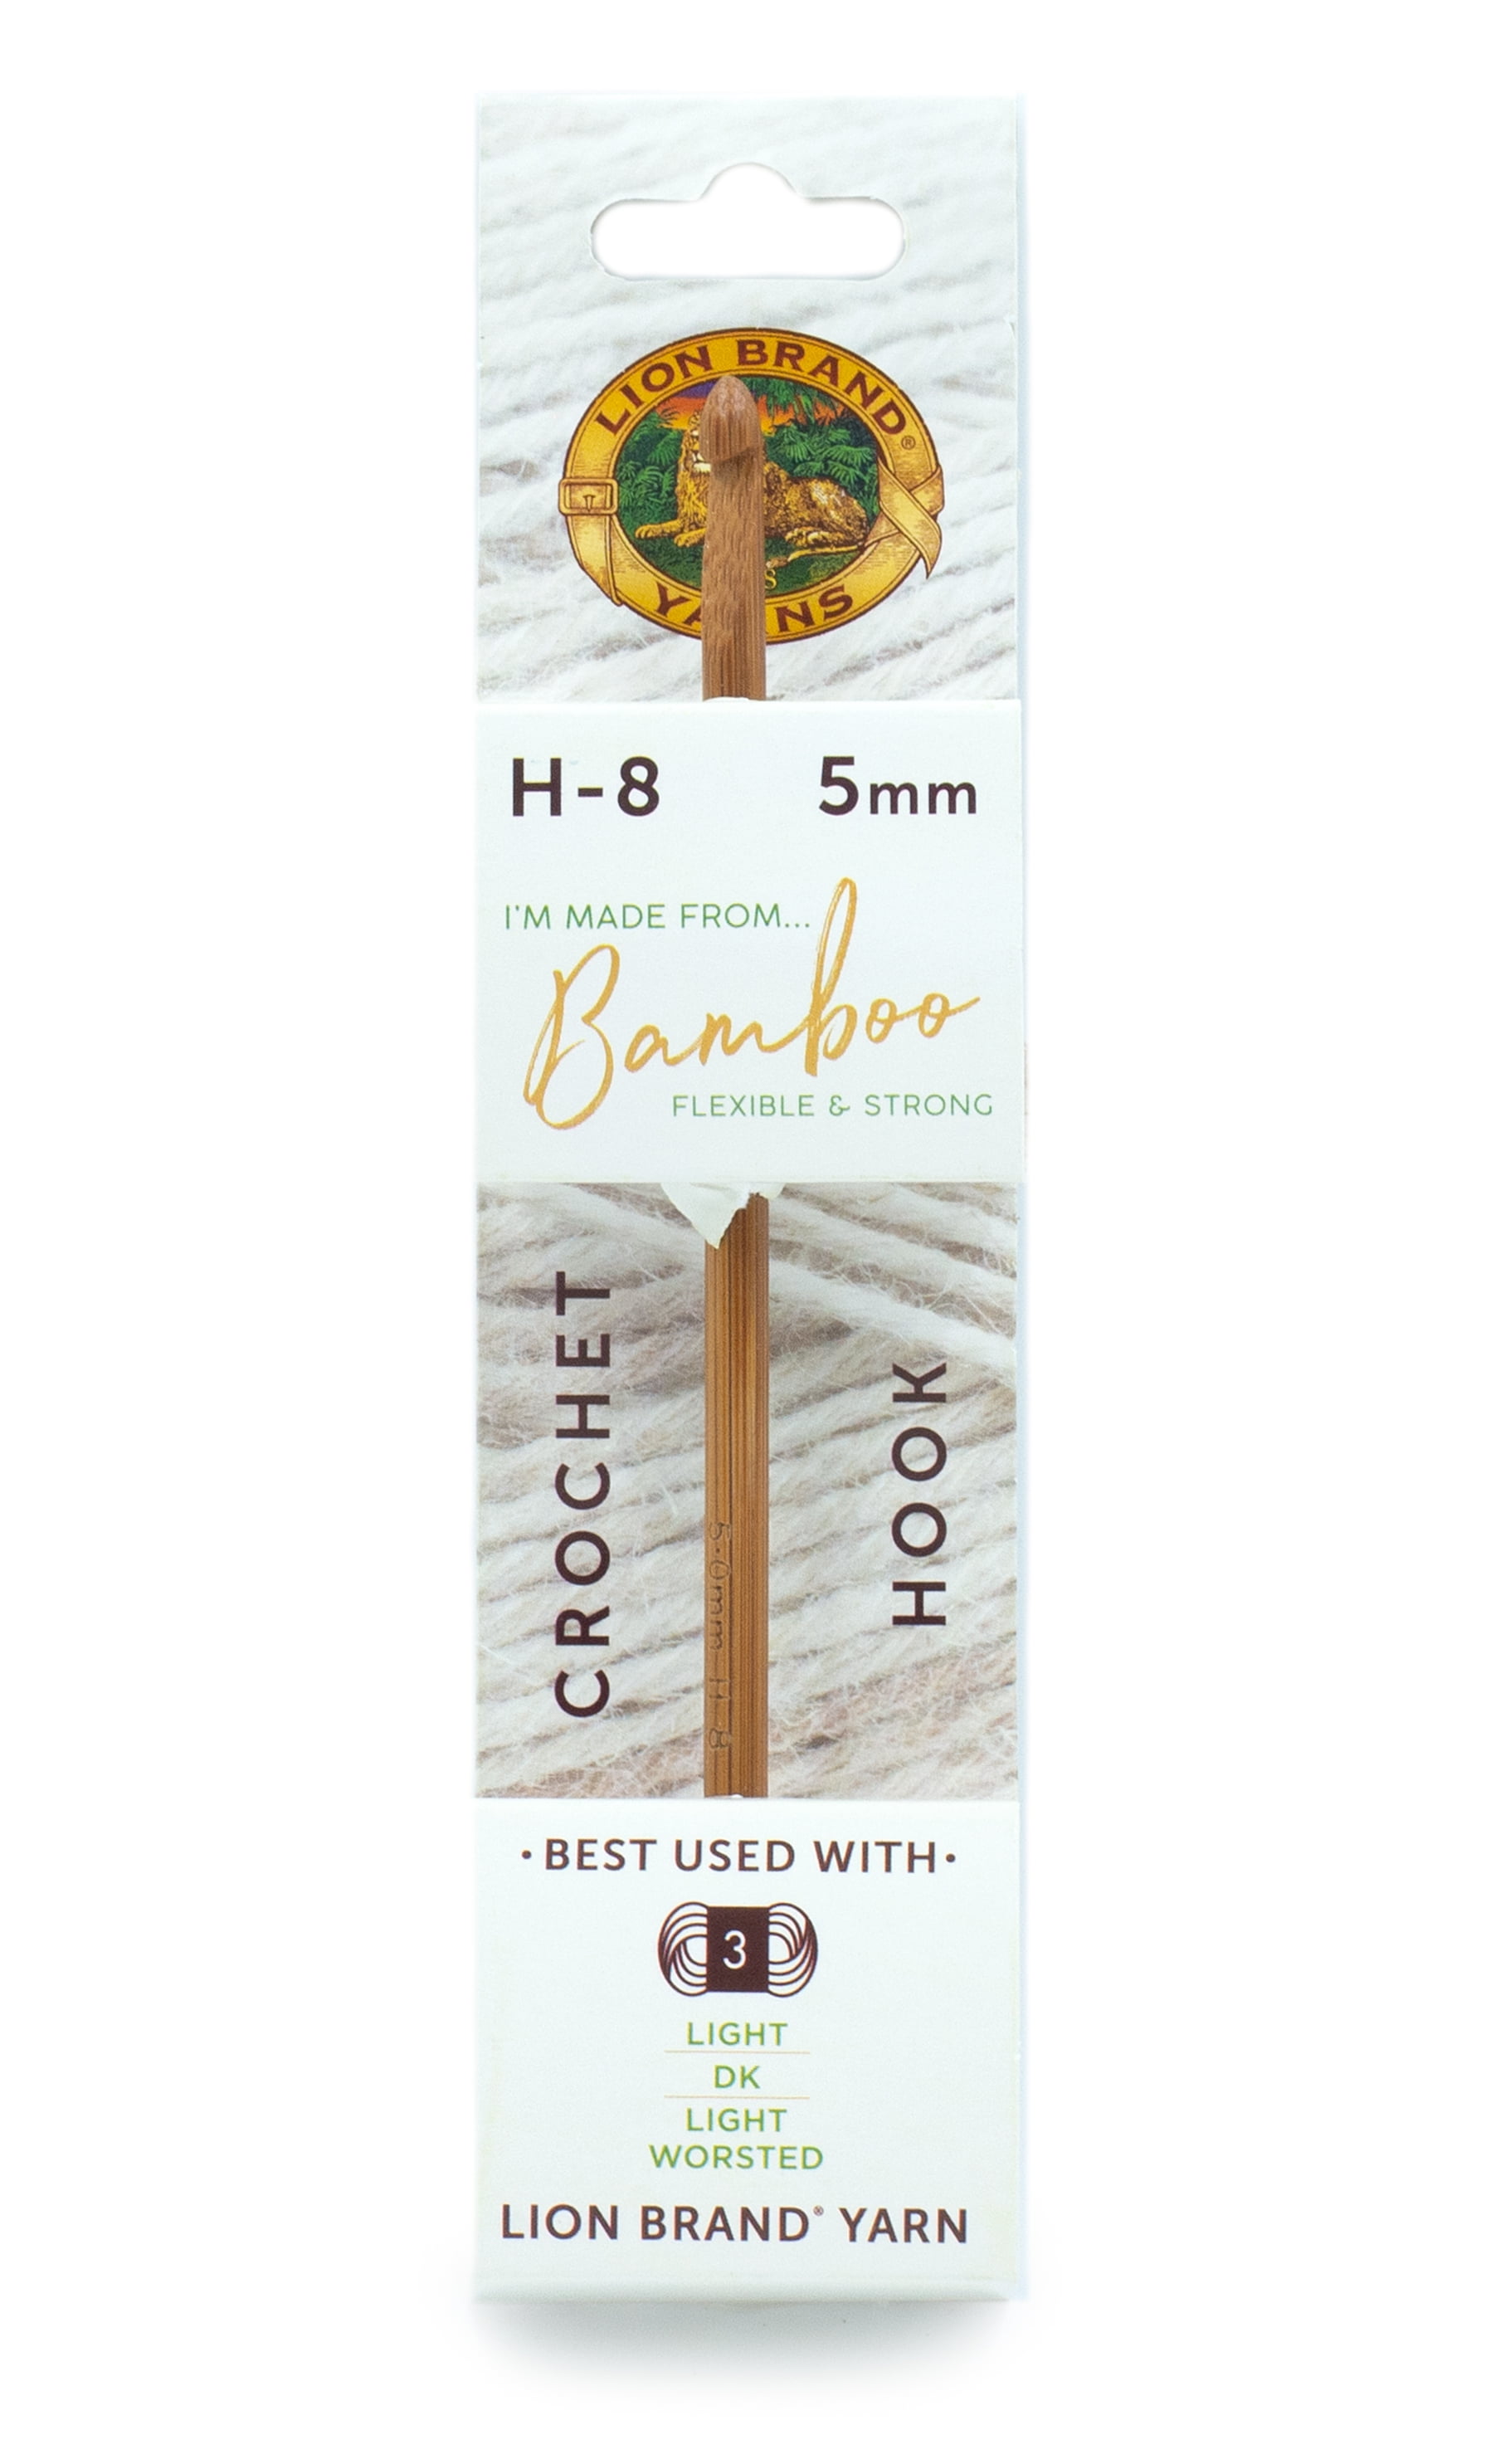 Lion Brand Bamboo Crochet Hook Set Review 